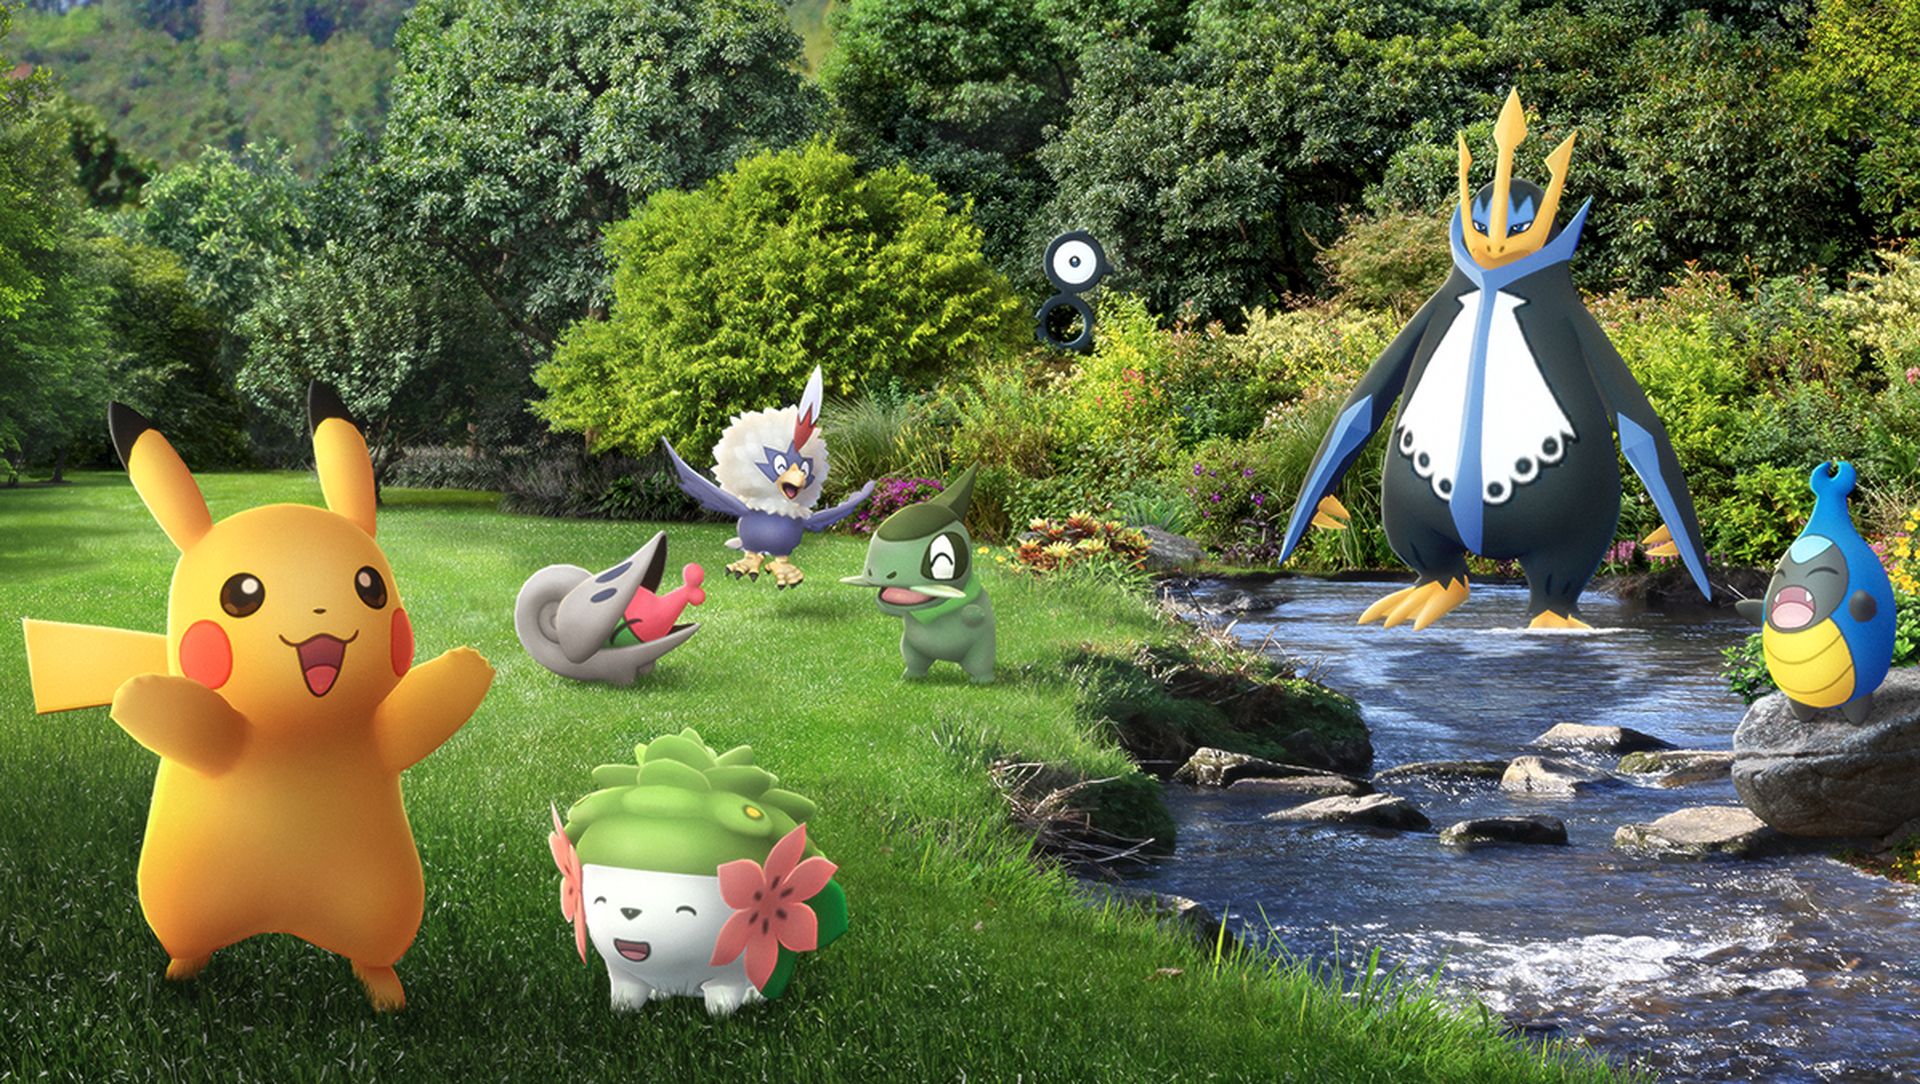 Choose a path Pokémon GO Fest 2022: Catch, Battle or Explore?